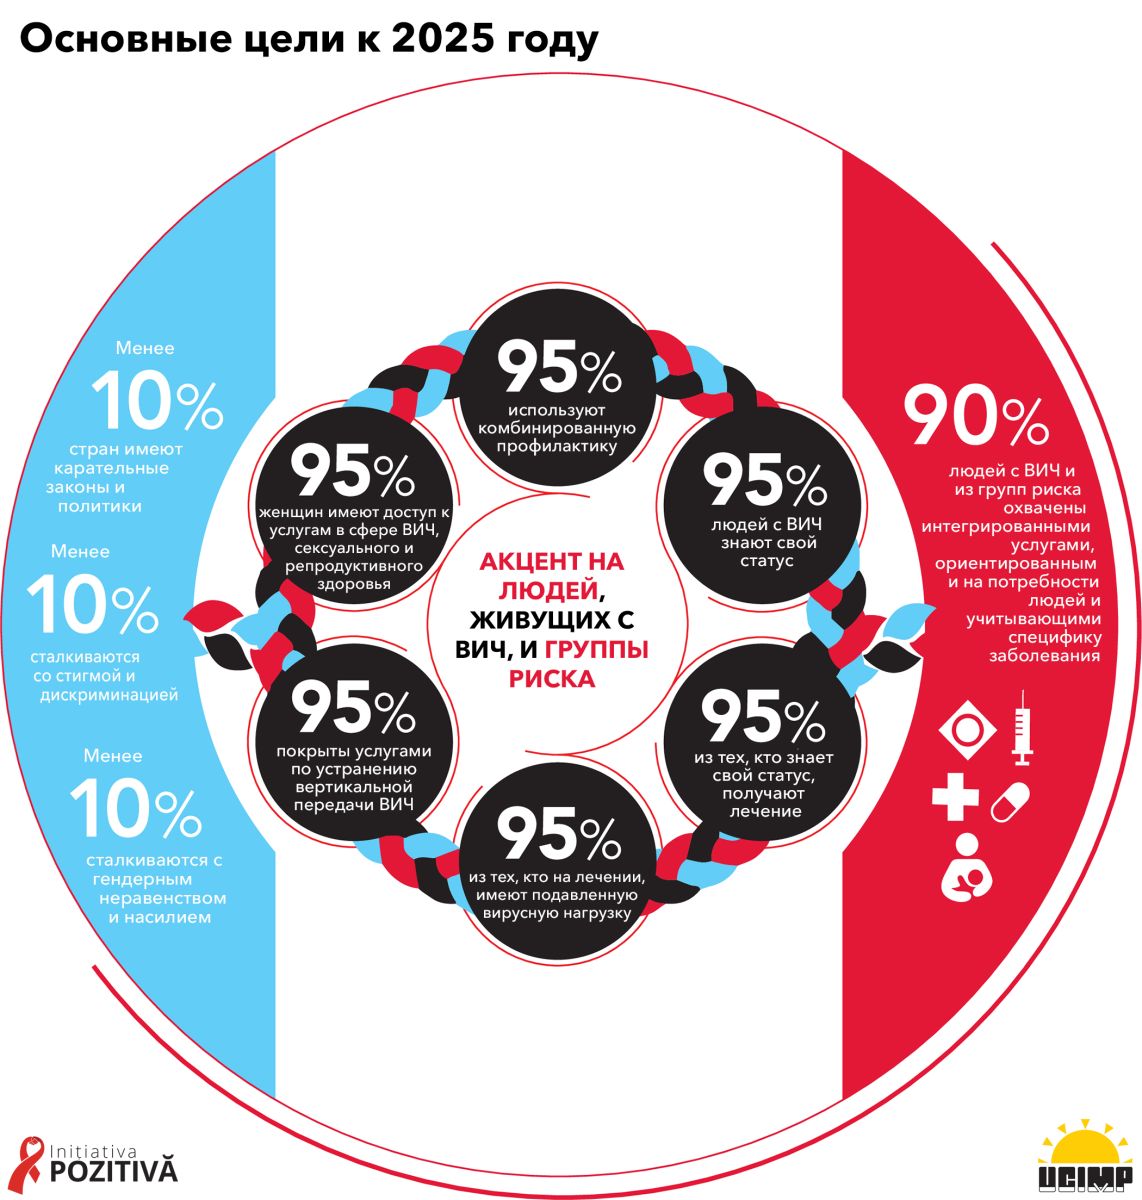 Obiectivele de prevenire HIV pentru 2025